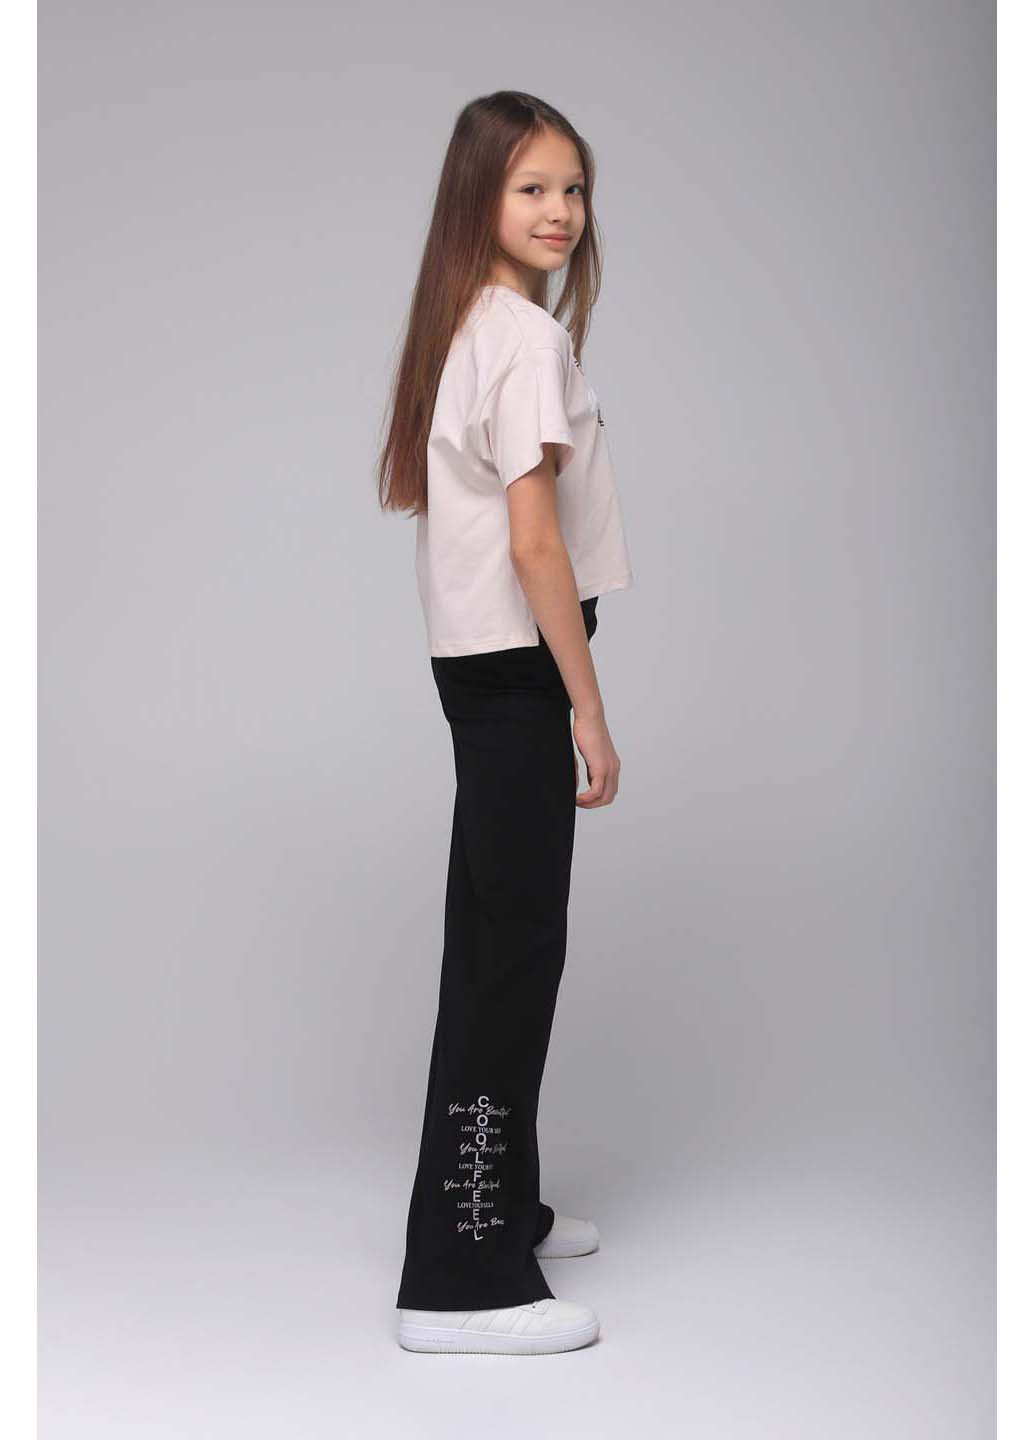 Черный демисезонный костюм для девочки футболка, штаны палаццо Viollen